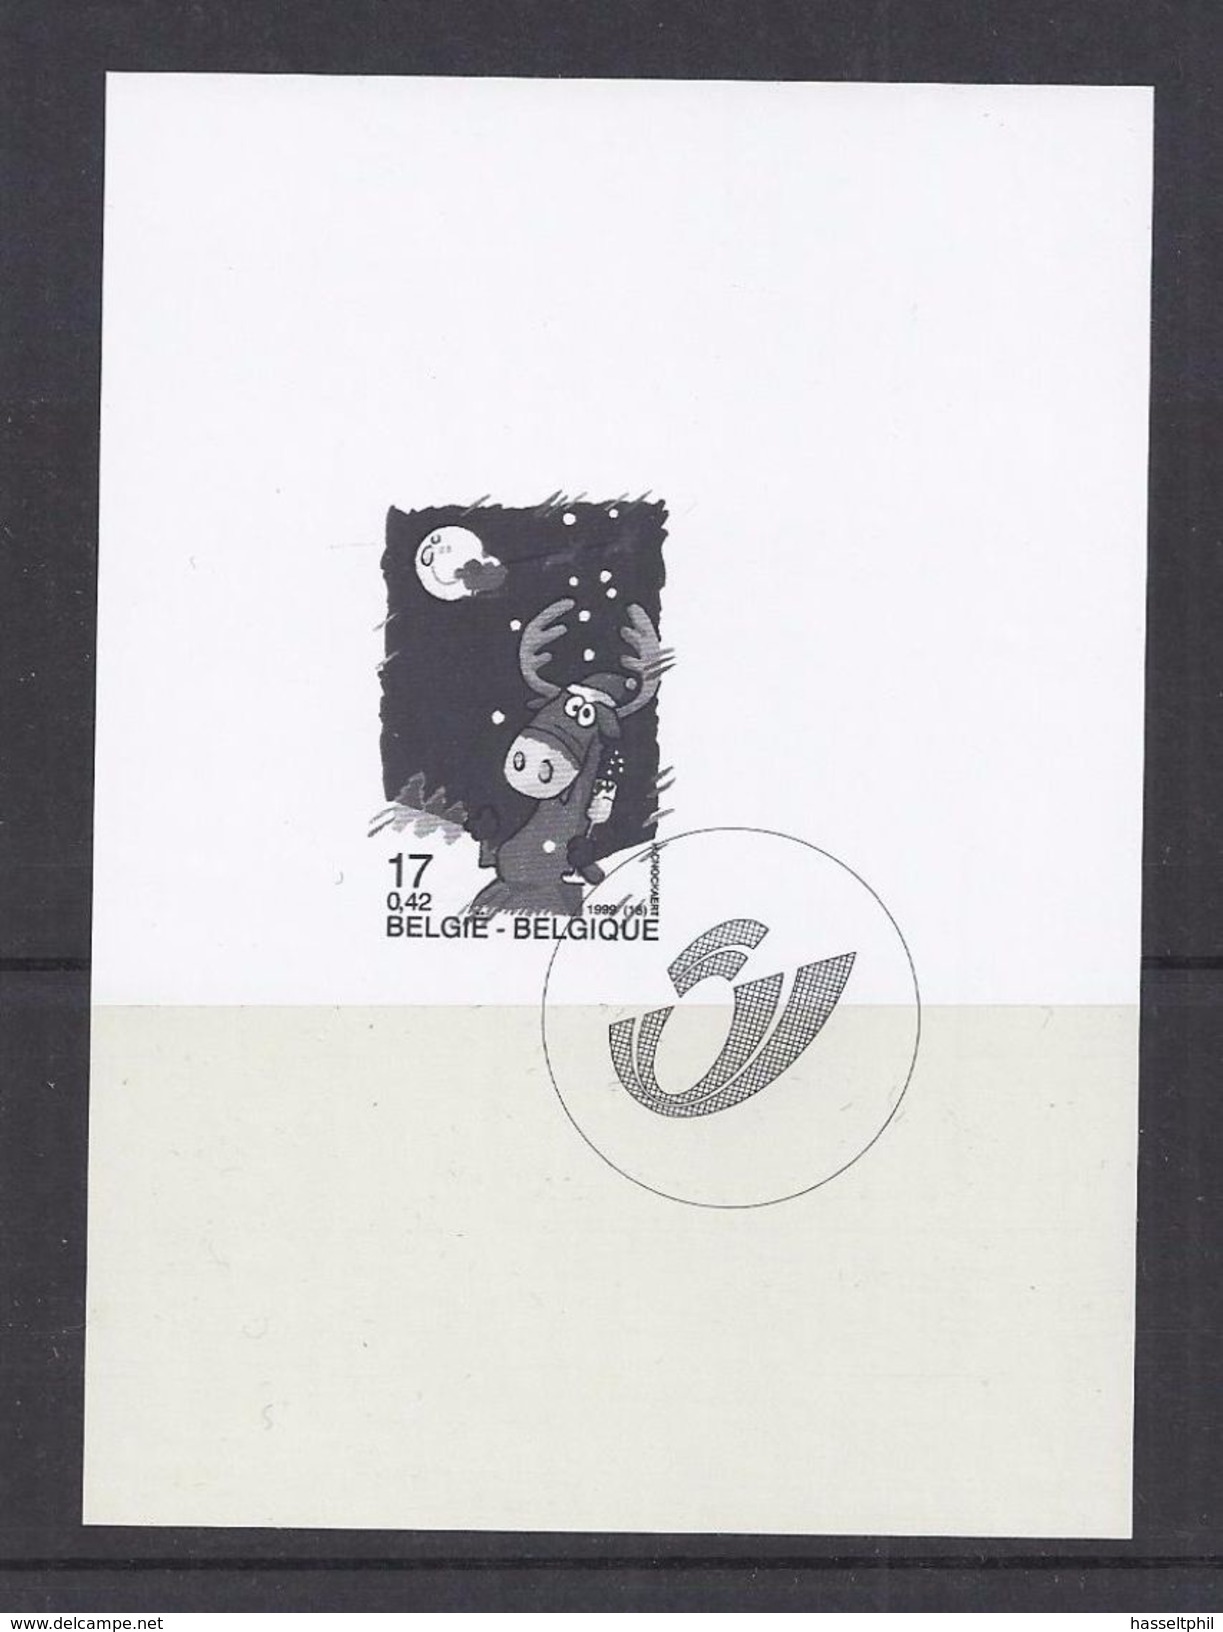 Belgie - Belgique GCB3 - Zwart-wit Velletje Uit Jaarboek 1999  -  Kerstzegels 2853  - NIET GEKWOTEERD - Feuillets N&B Offerts Par La Poste [ZN & GC]